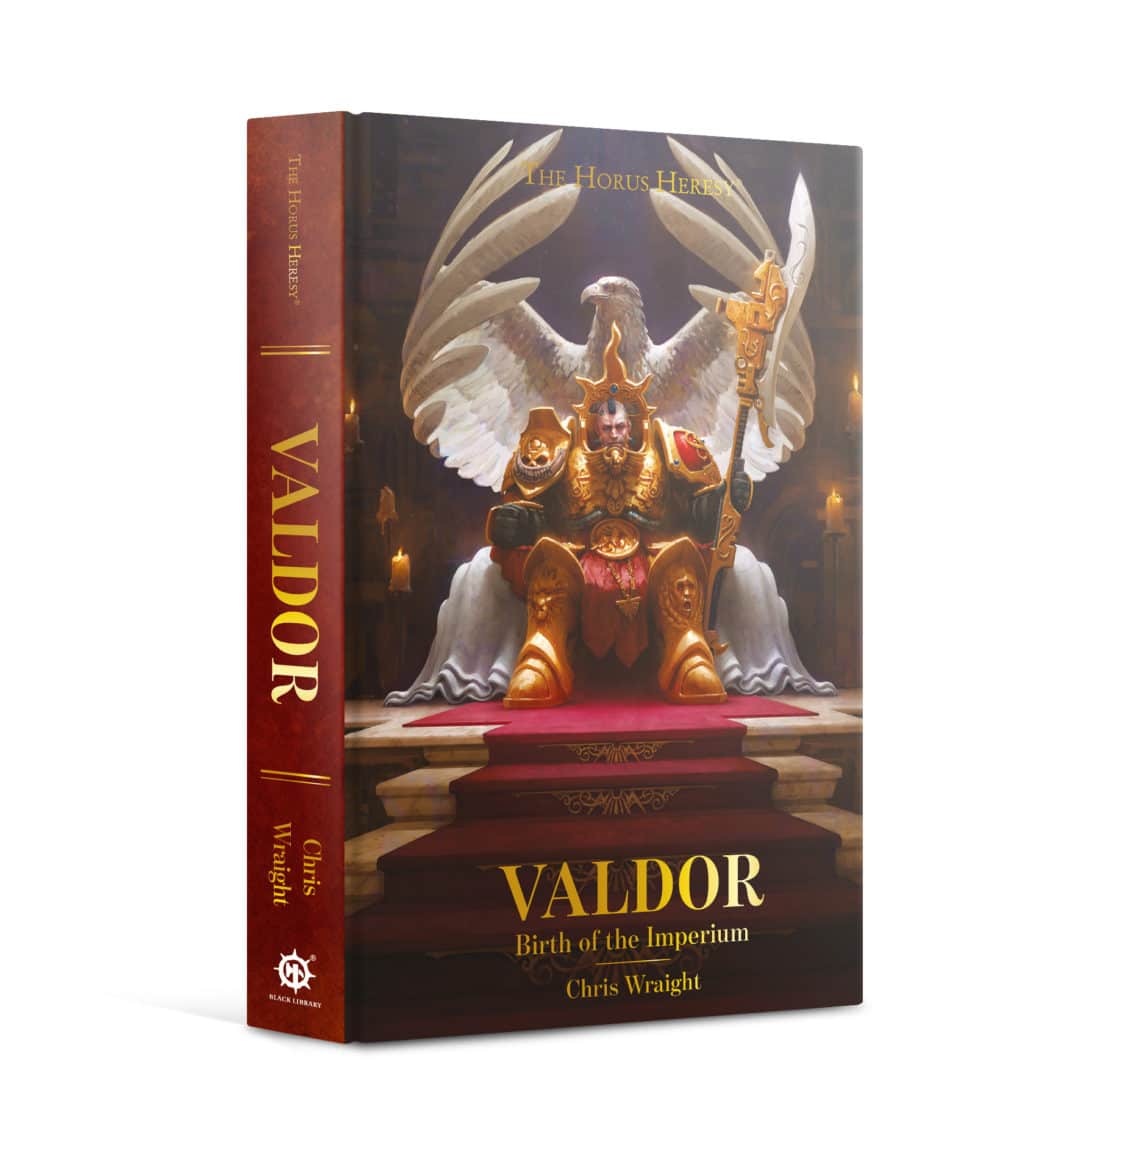 Valdor: Birth of the Imperium (HB)